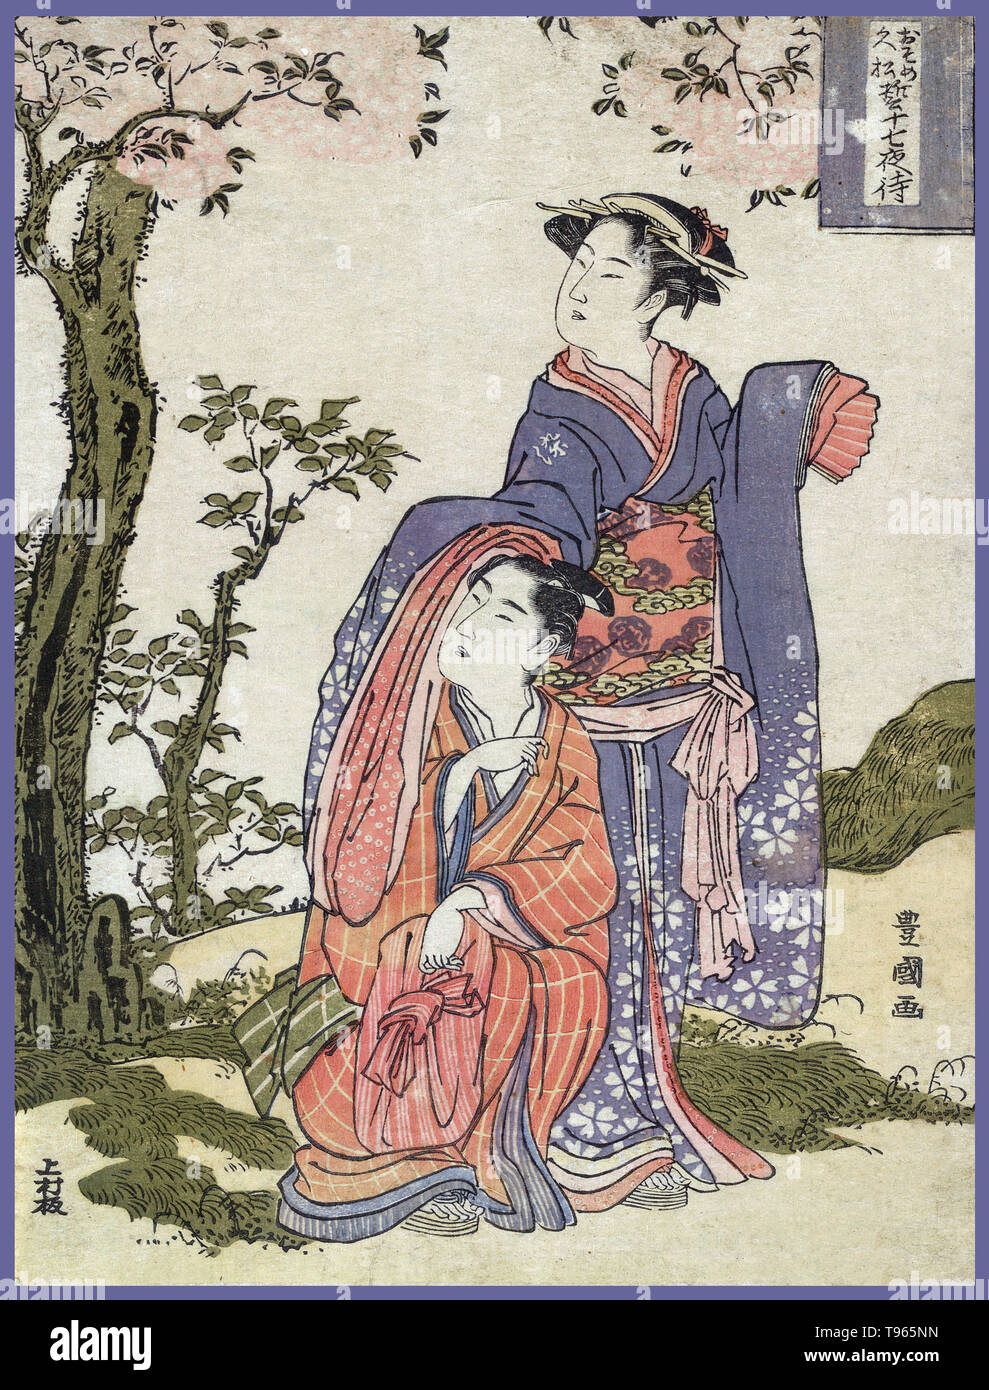 Hisamatsu Osome chikai no jushichiya machi. Il giovane Osome Hisamatsu e visualizzazione della metà di agosto luna. Ukiyo-e (immagine del mondo fluttuante) è un genere di arte giapponese che fiorì dal XVII attraverso il XIX secolo. Ukiyo-e è stato centrale per formare l'Occidente la percezione dell'arte giapponese nel tardo XIX secolo. Dal 1870 Japonism divenne un importante tendenza e ha avuto una forte influenza sui primi impressionisti, nonché Post-Impressionists e Art Nouveau artisti. Foto Stock